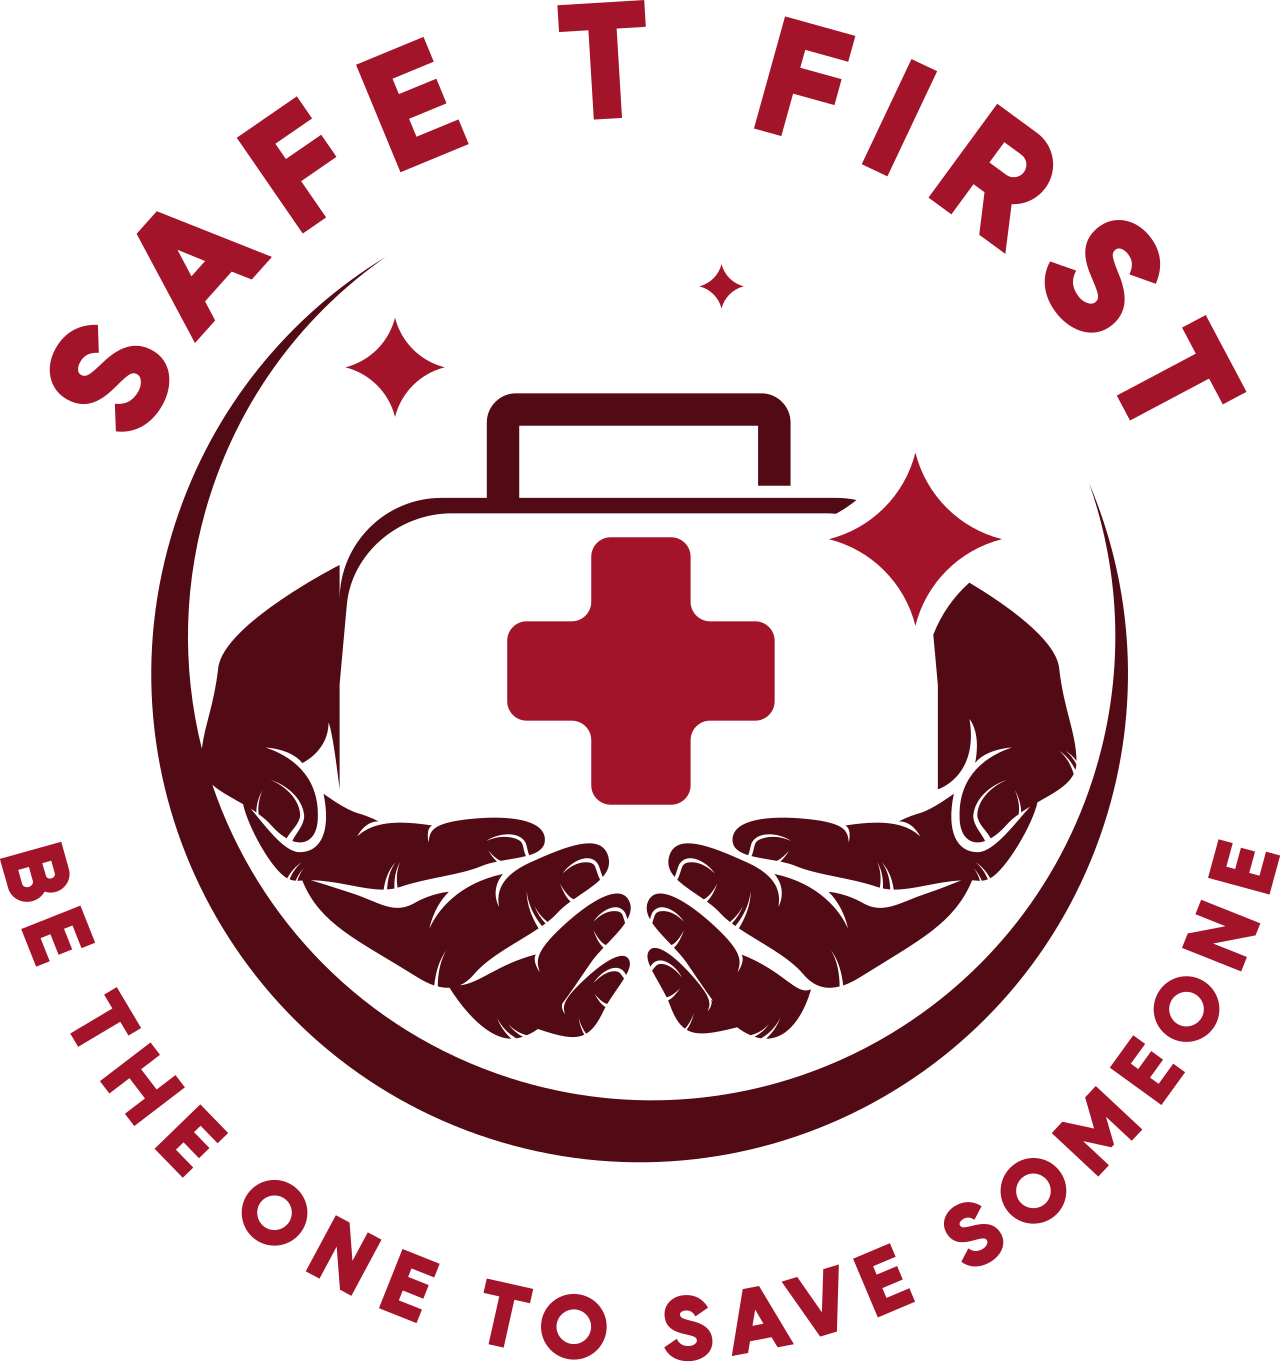 Safe T First's logo